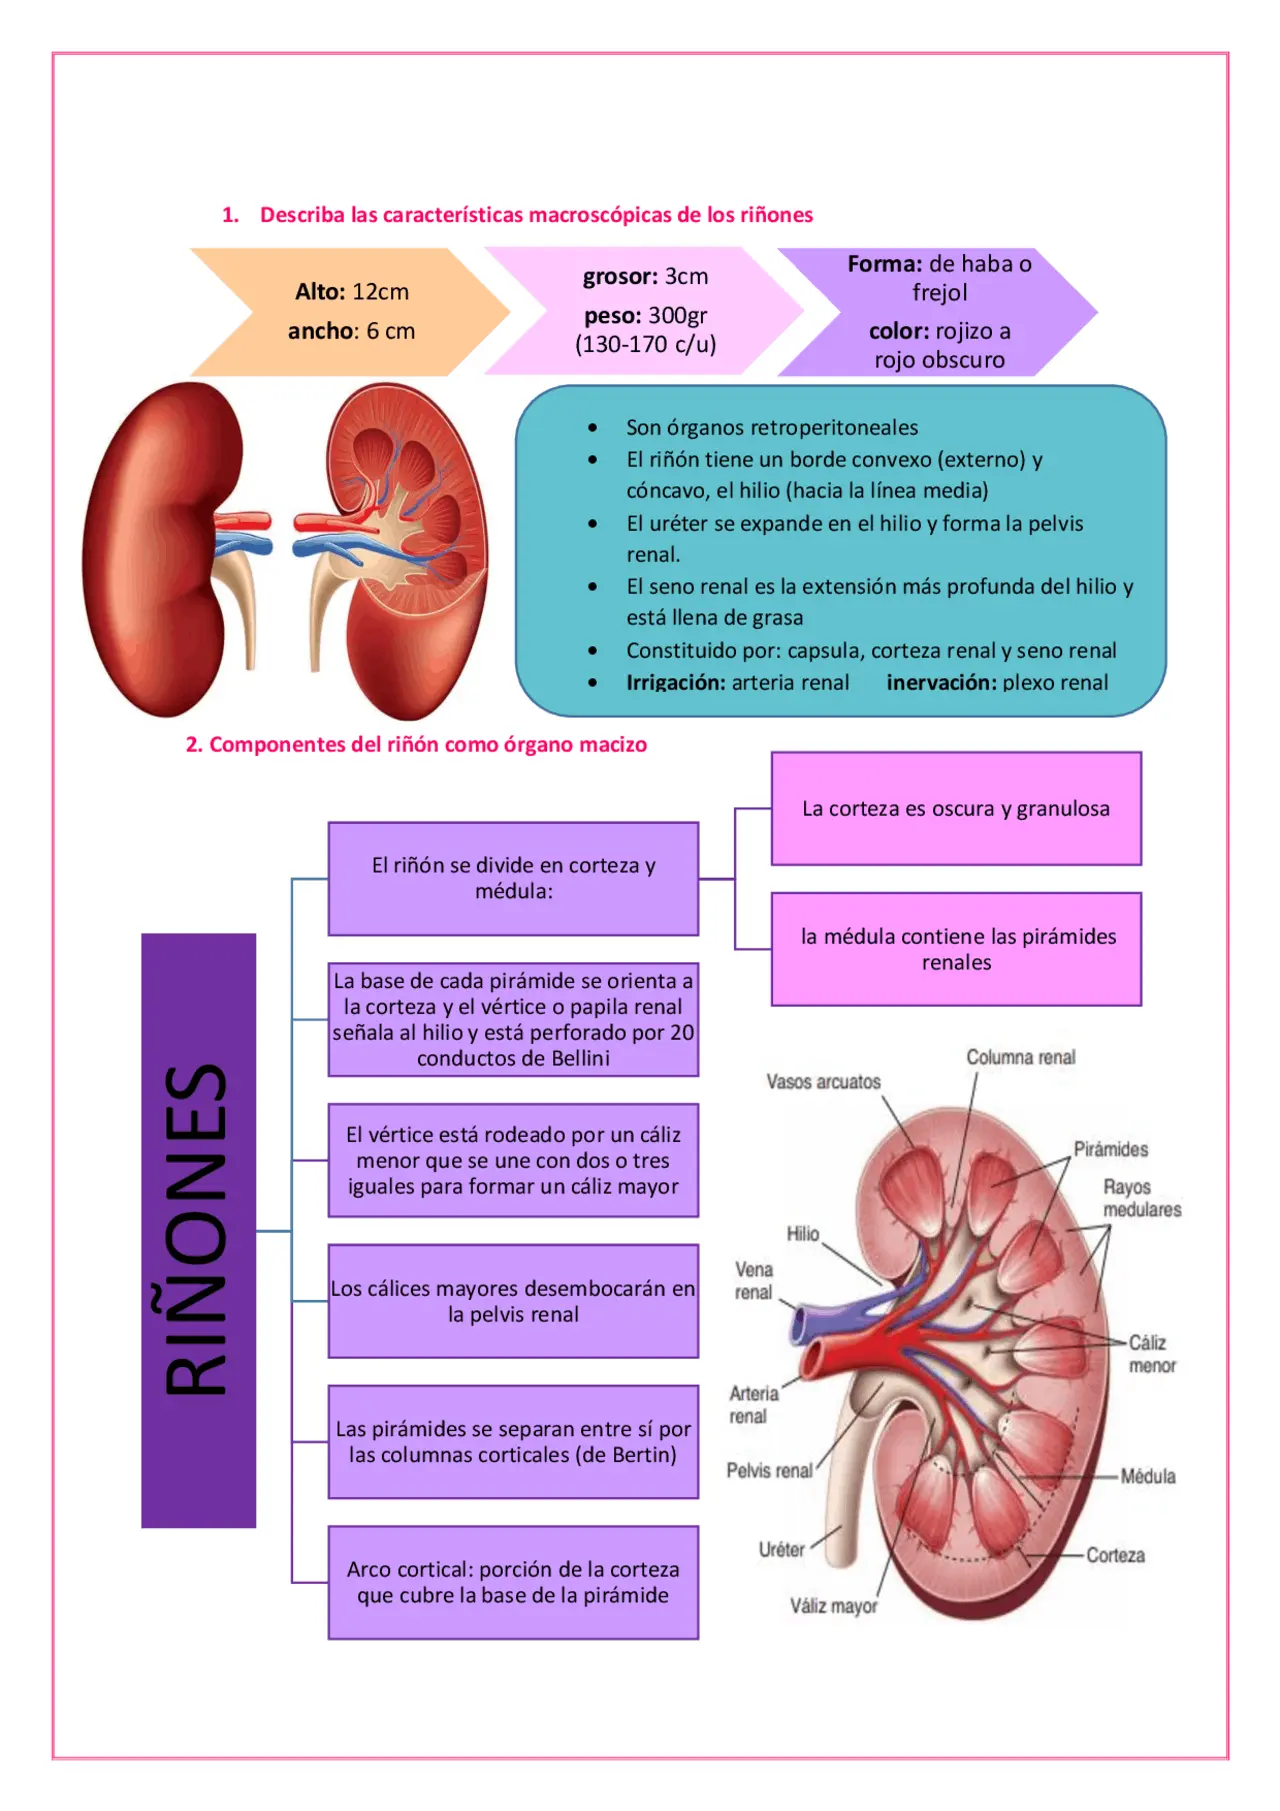 histologia del riñon resumen - Cómo se divide el riñón Histologicamente